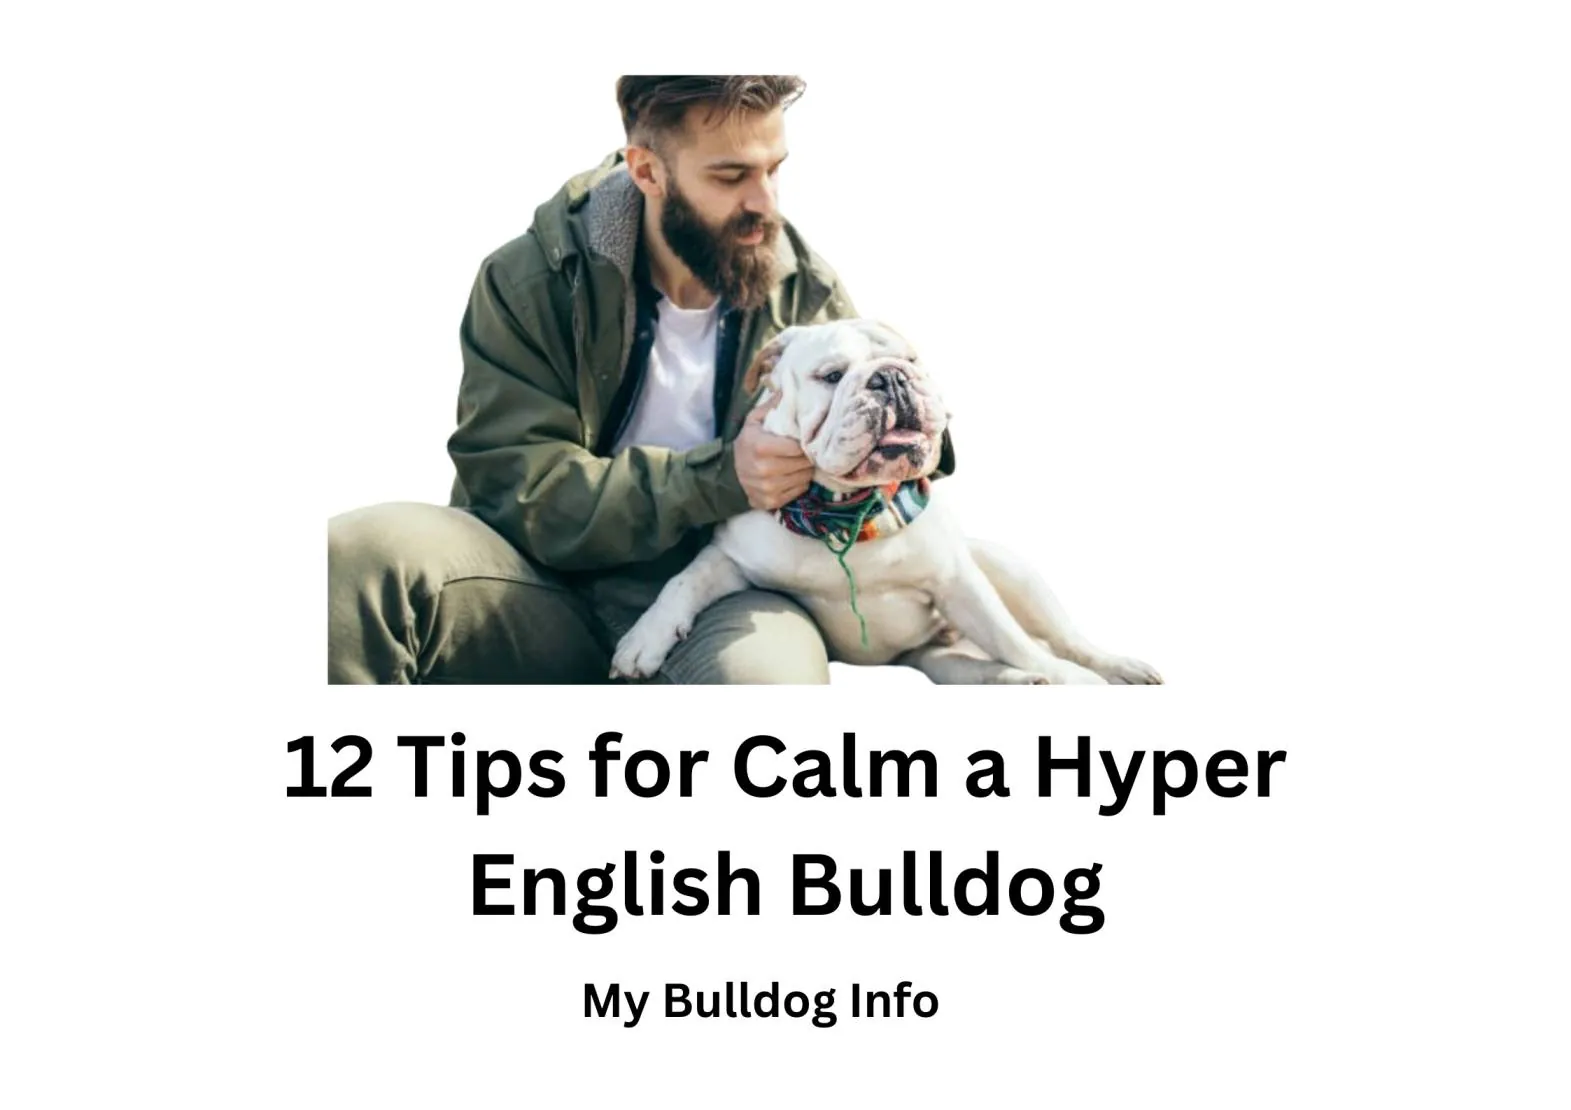 How to Calm a Hyper English Bulldog